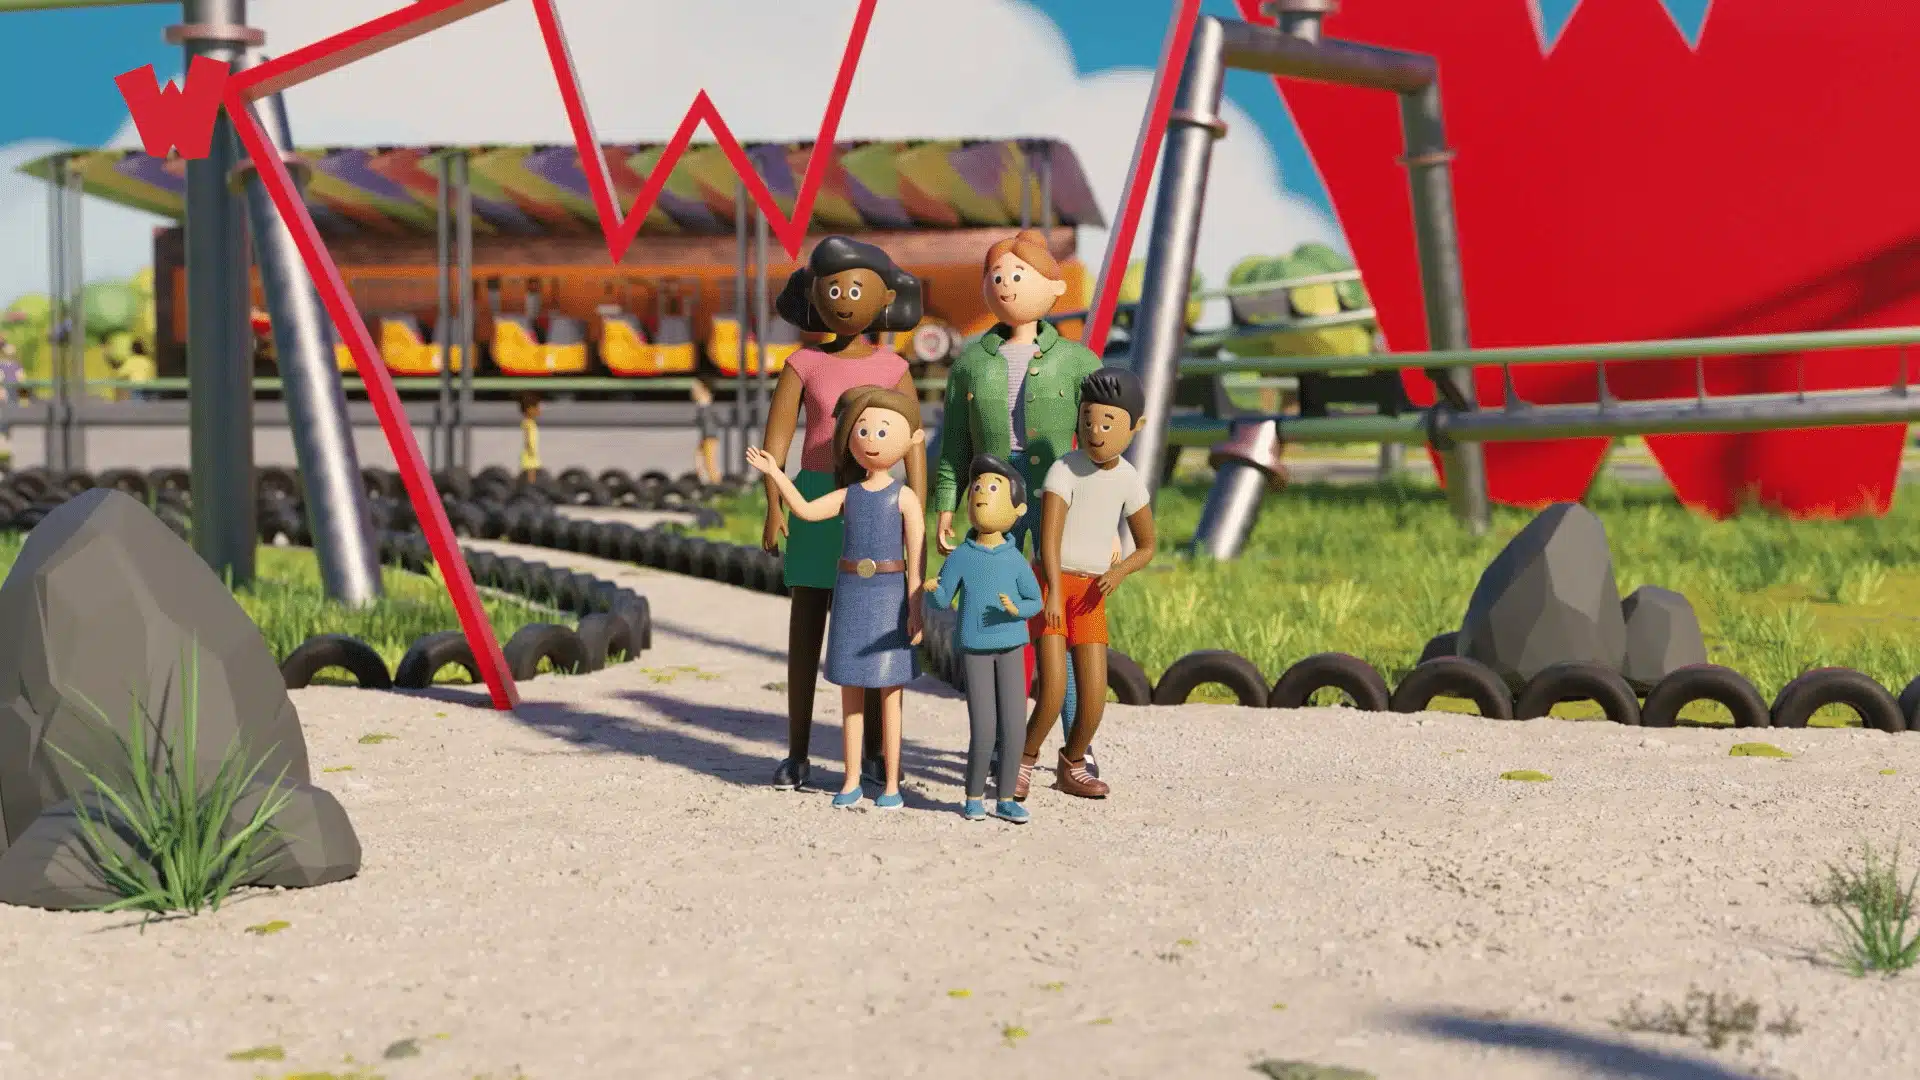 3D gemodeleerde donkere moeder en blanke roodharige moeder staan met hun drie kinderen voor een achtbaan van het attractiepark Walibi